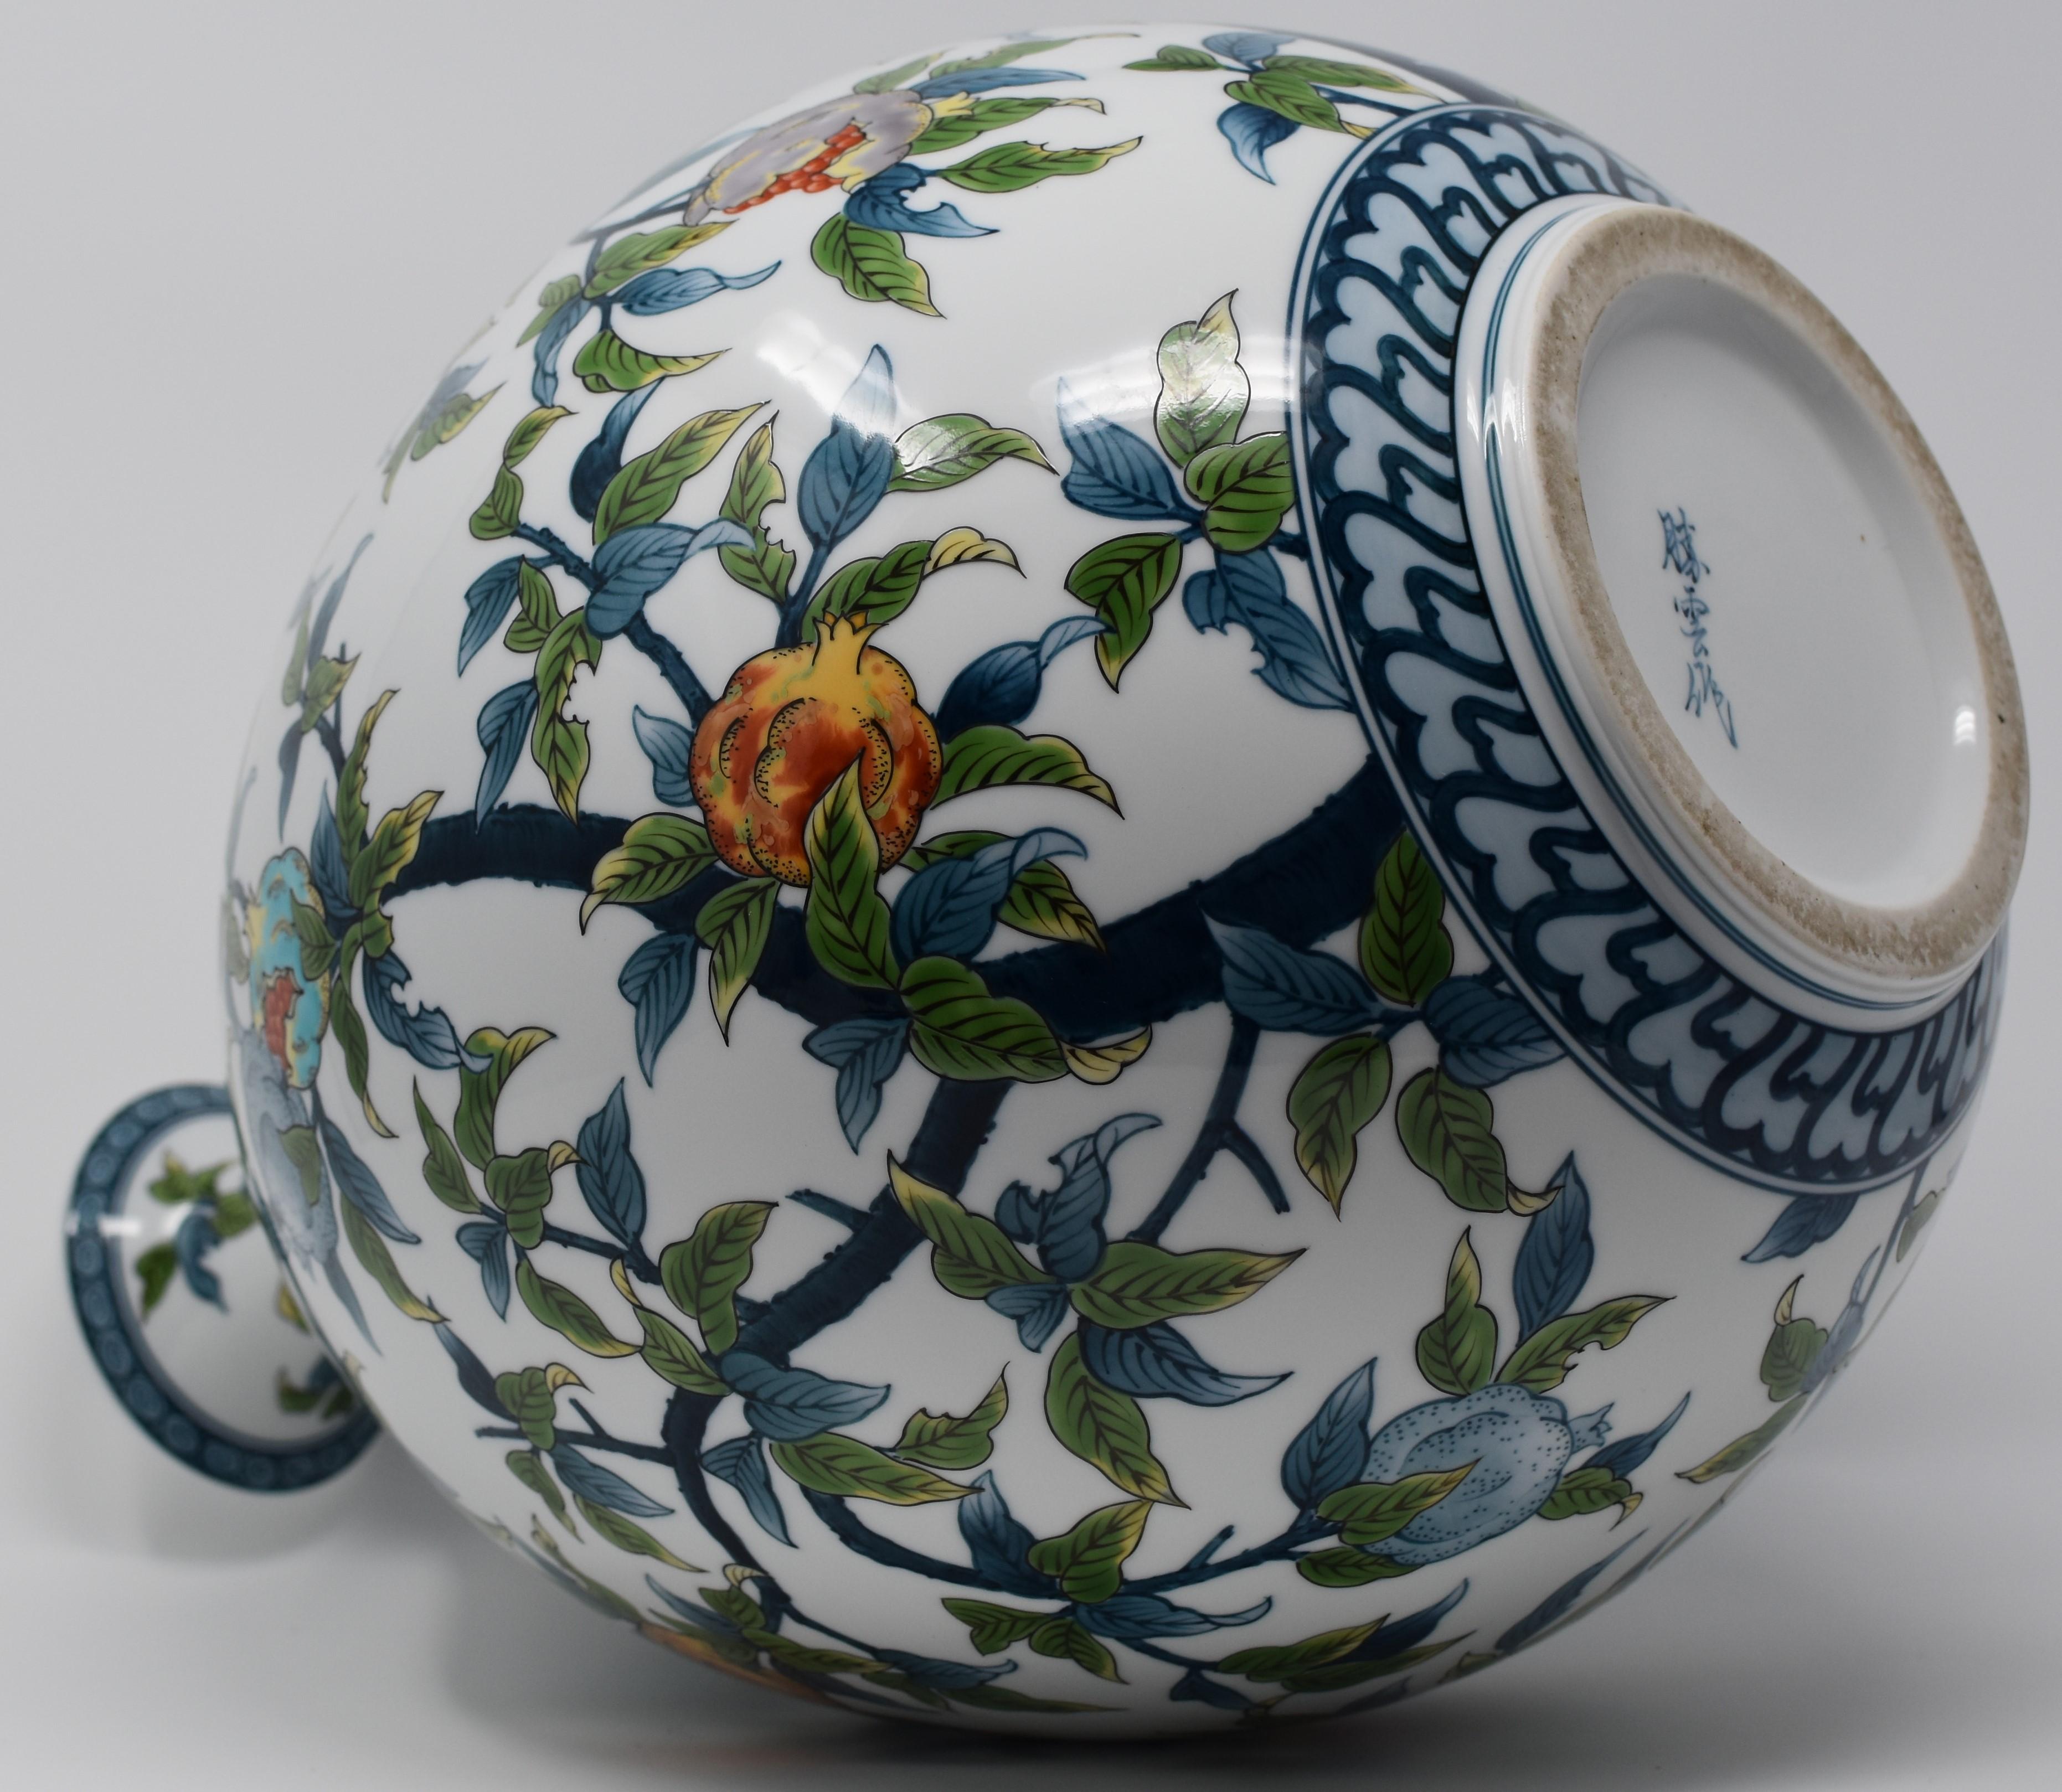  Contempory Imari Large Japanese Decorative Porcelain Vase by Master Artist 4